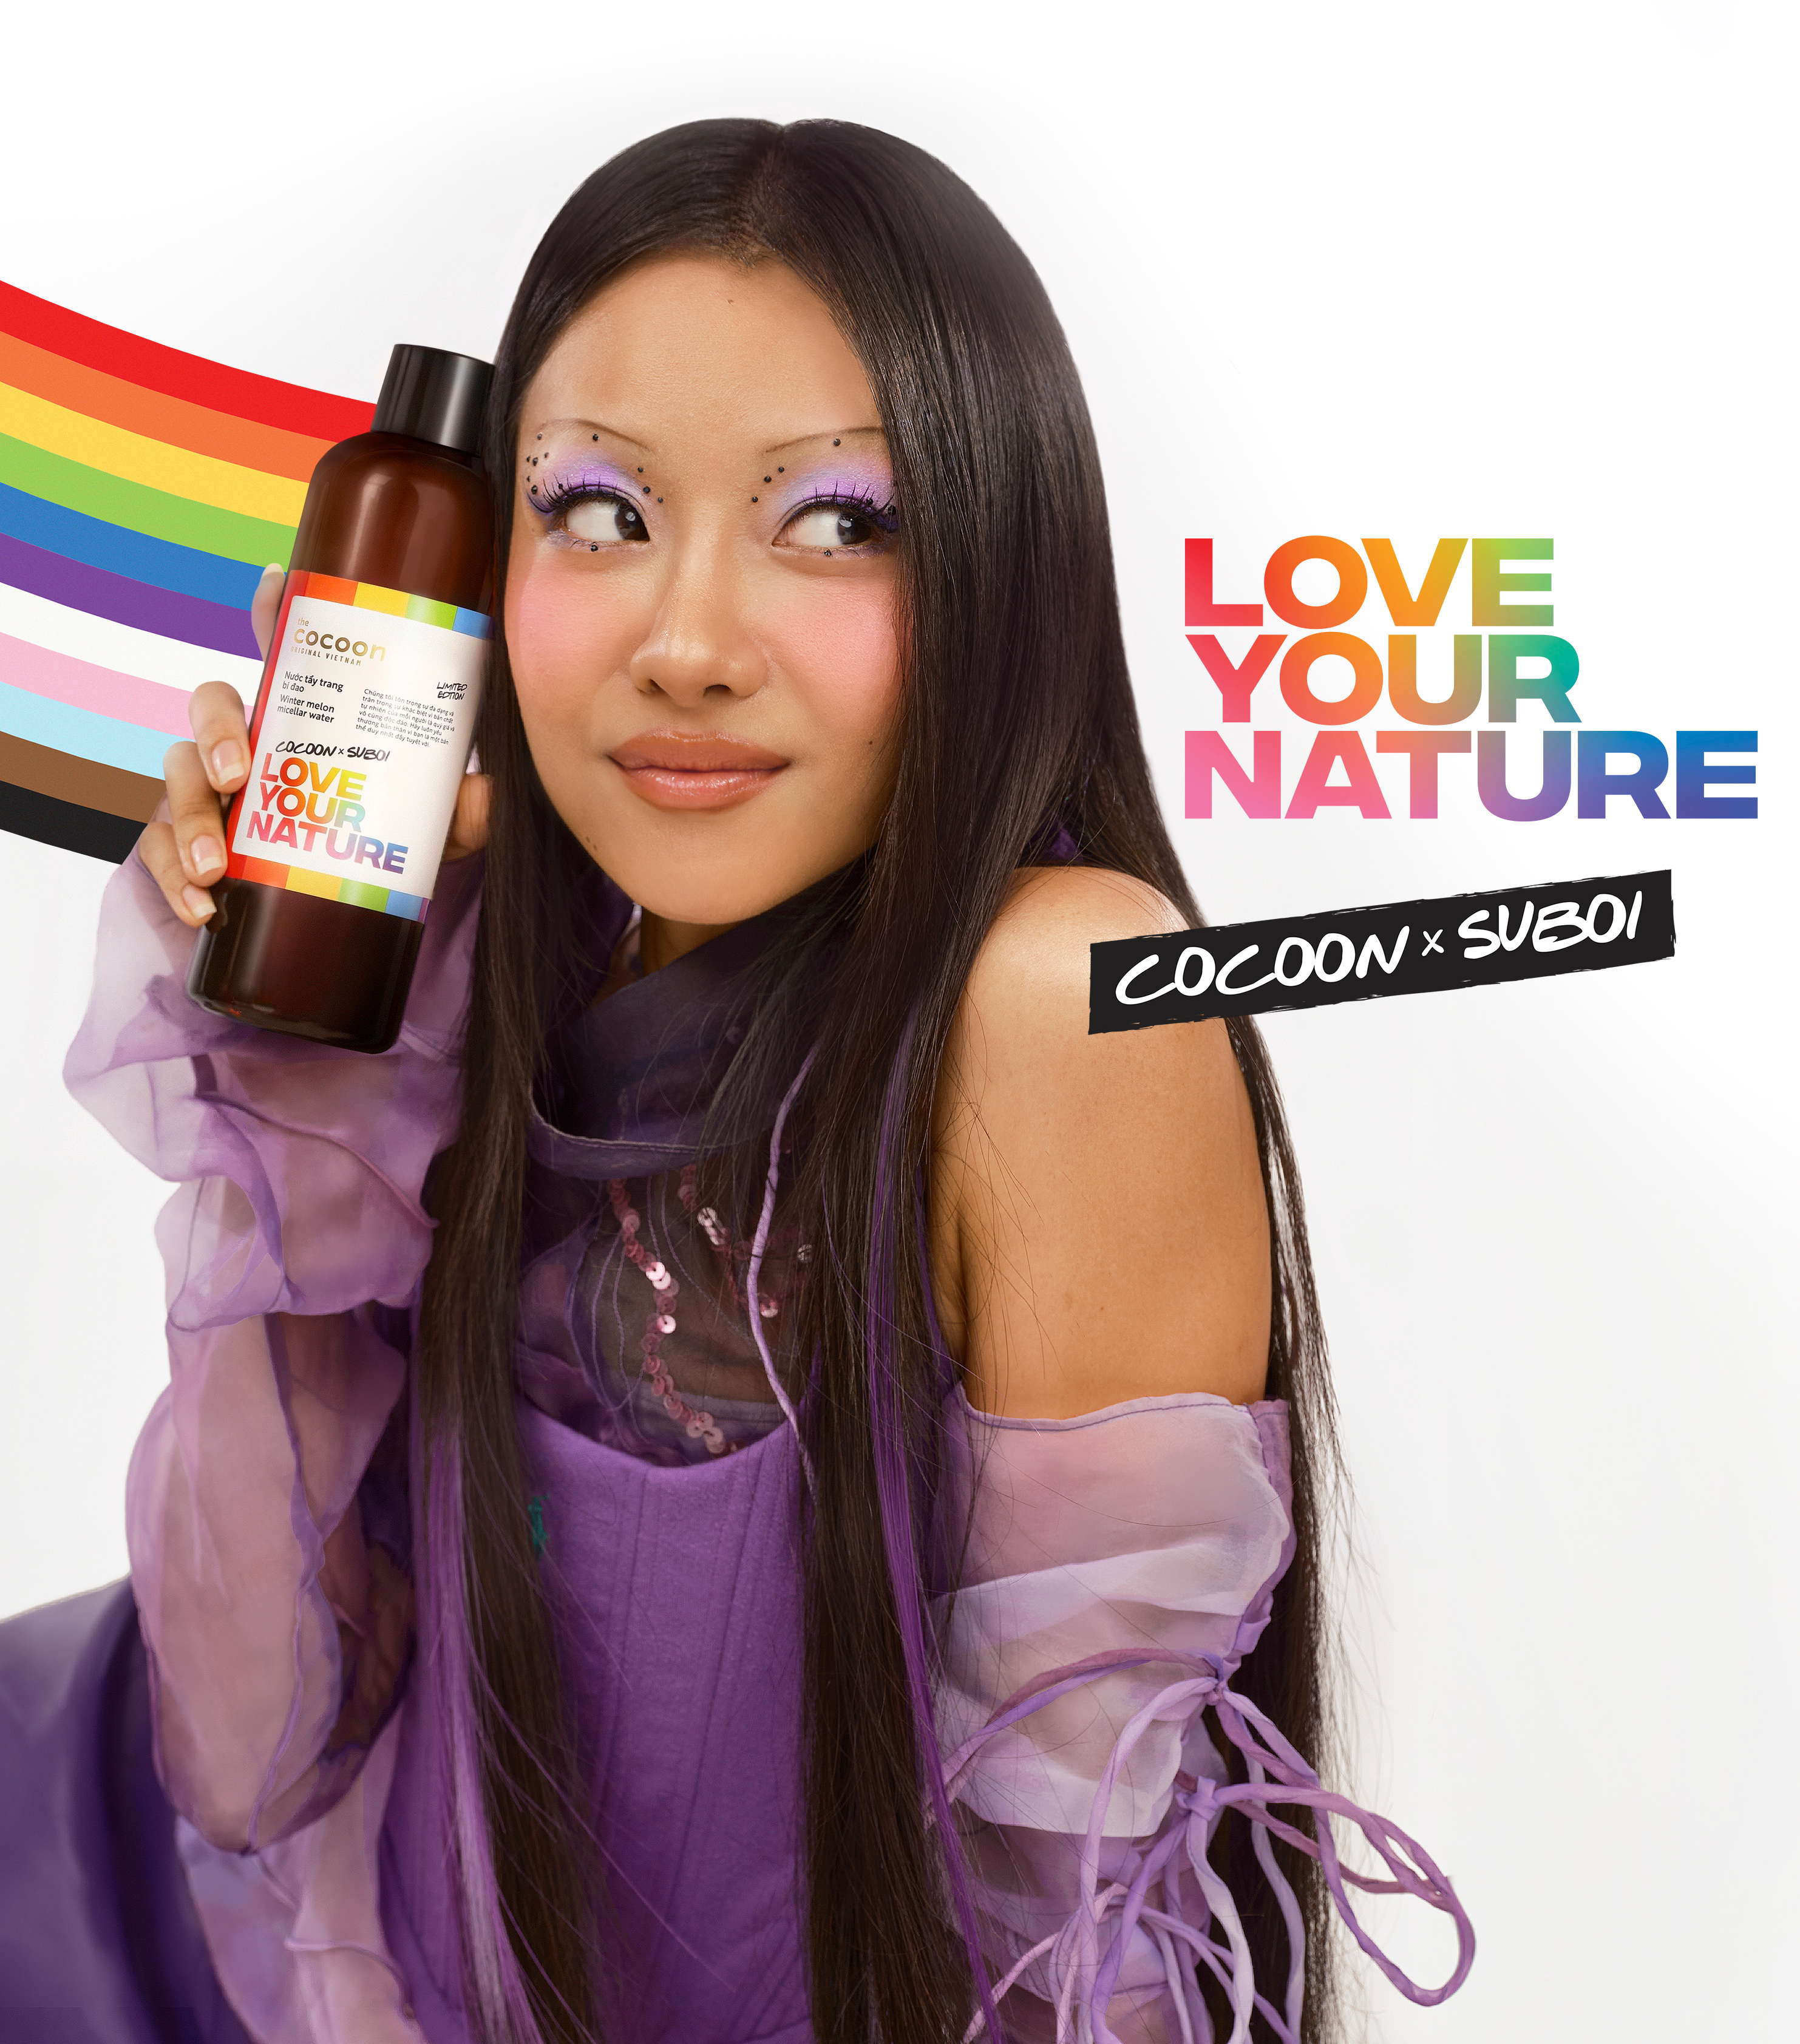 Cocoon x Suboi với thông điệp tôn vinh vẻ đẹp của cộng đồng LGBT: "Love Your Nature - Cứ tự nhiên đi". Ảnh: Cocoon